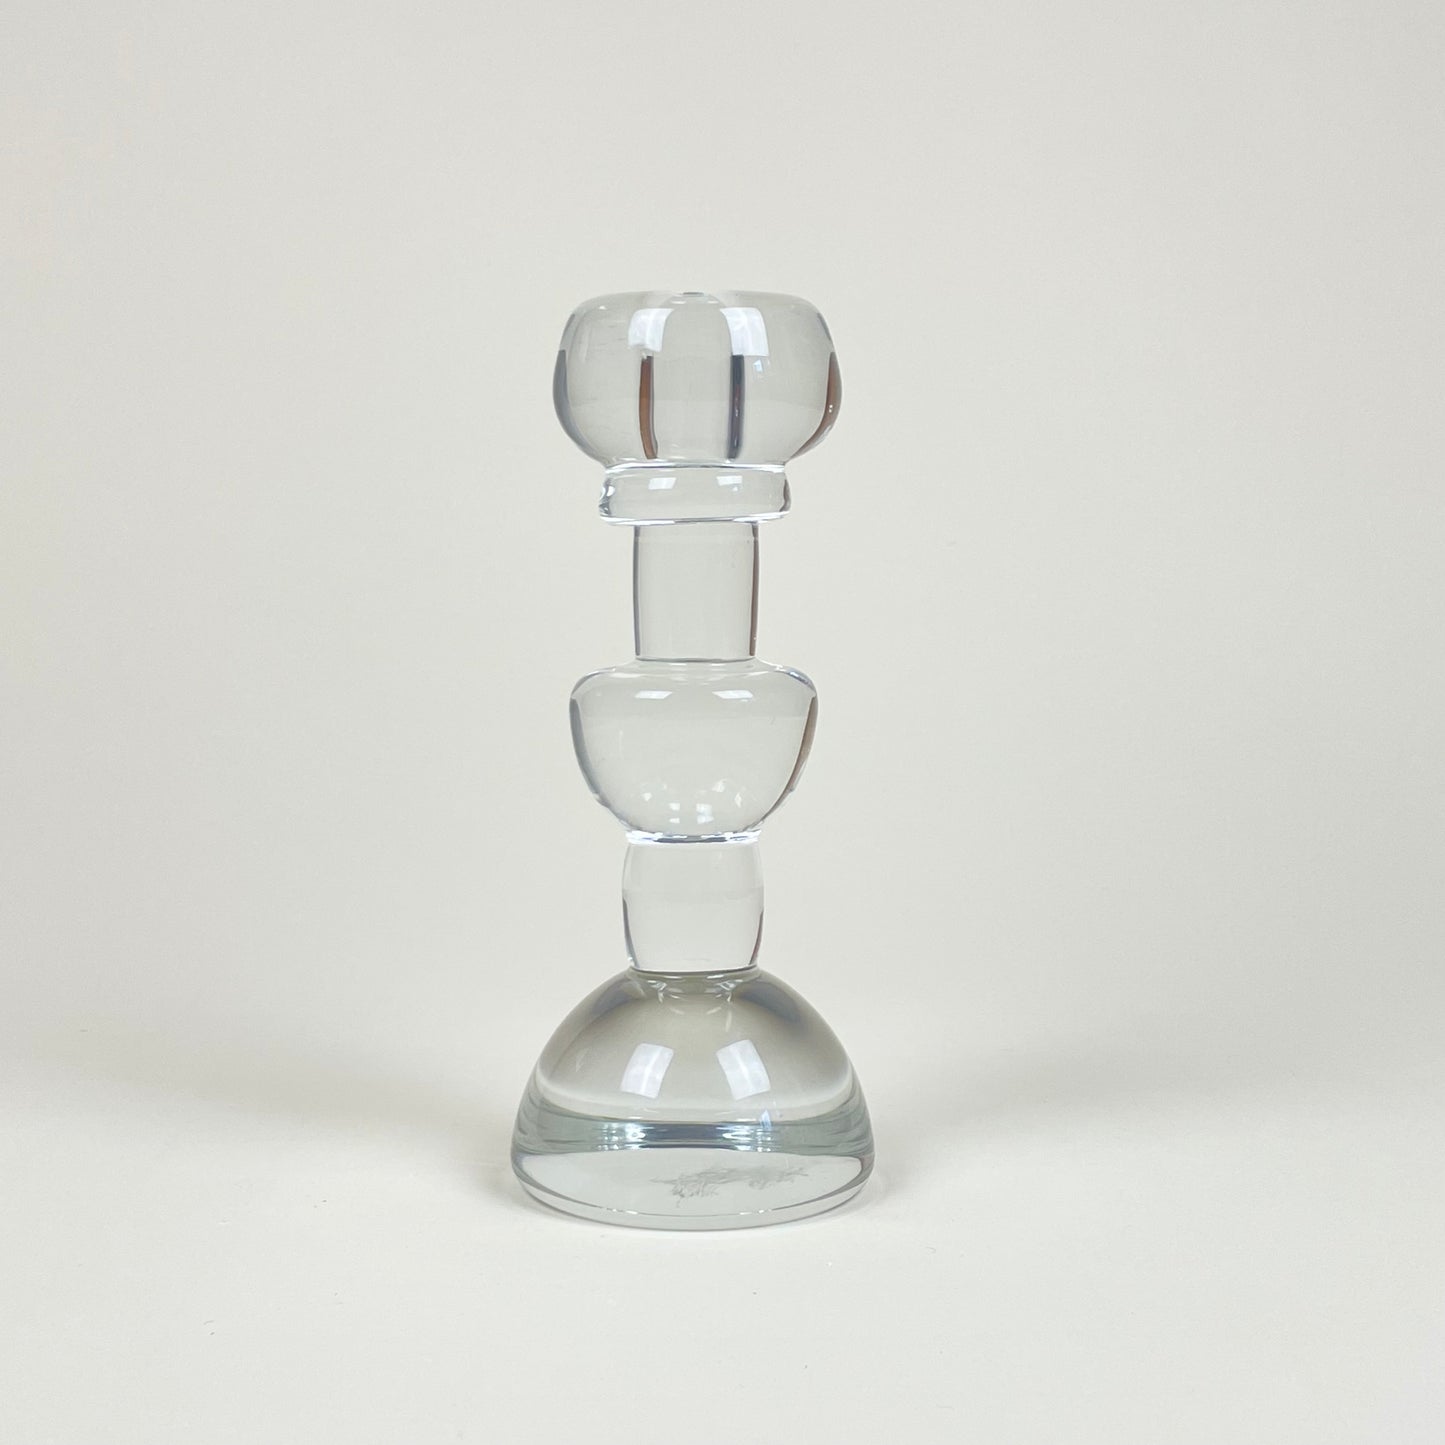 Candle holder in glass, vintage. Designed by Christer Sjögren